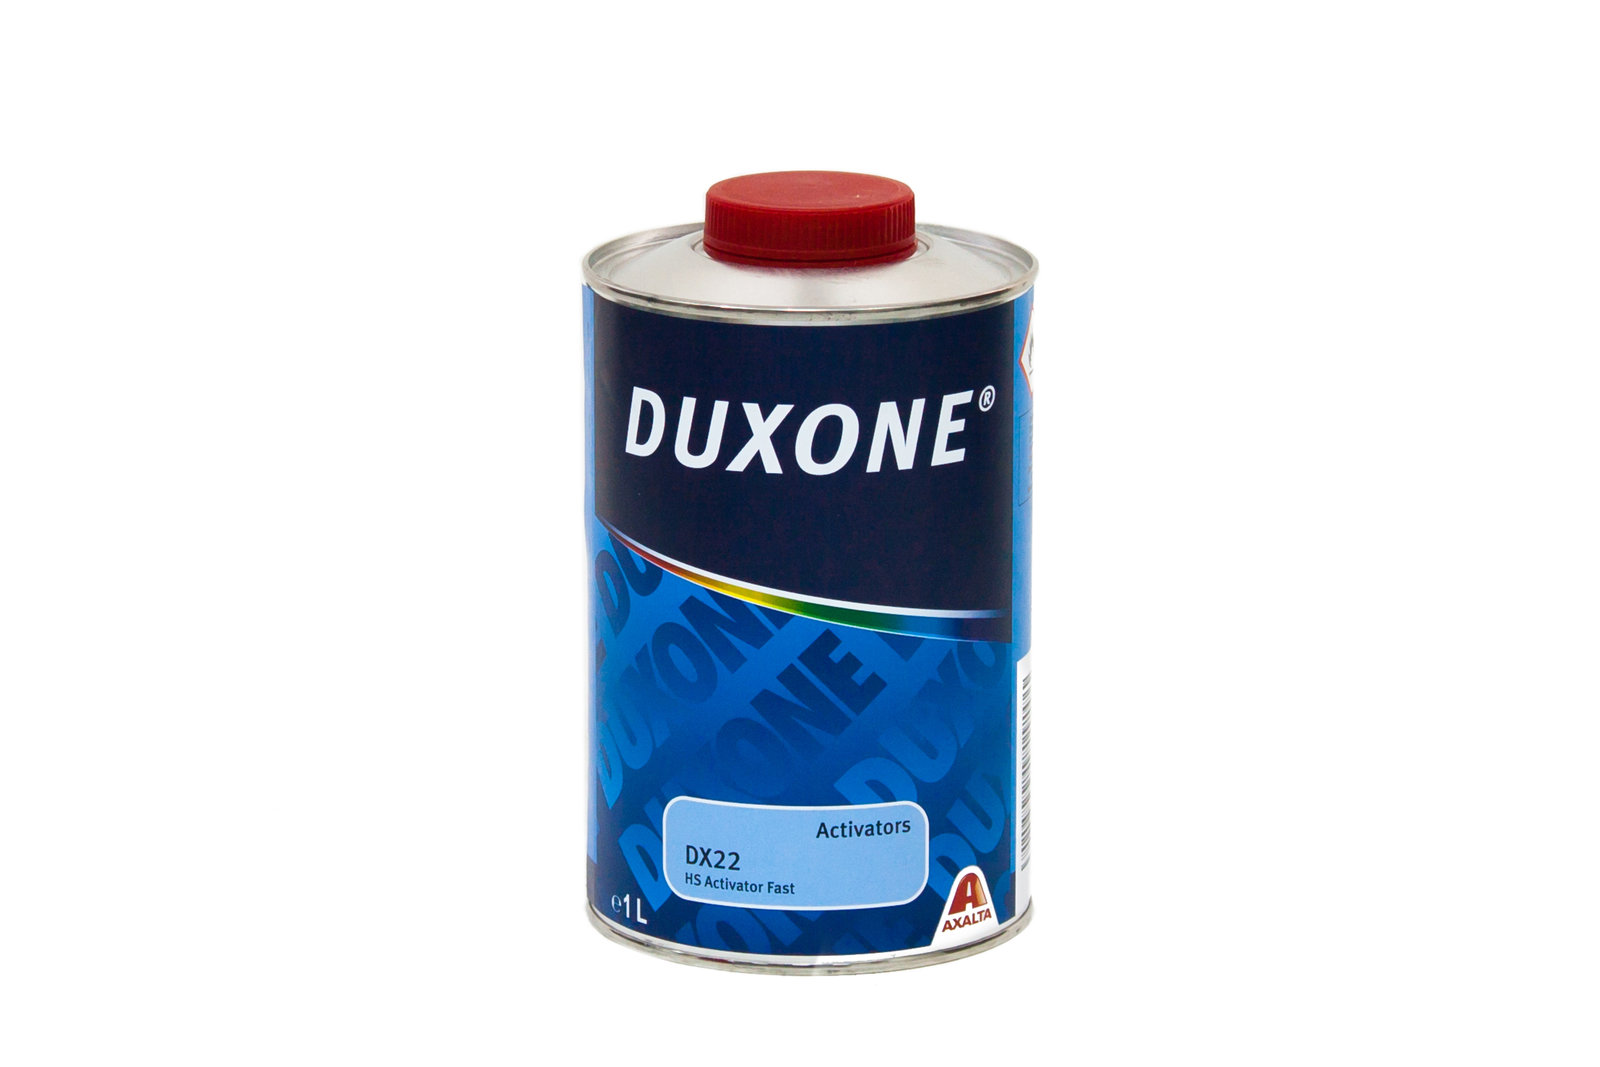 Активатор 22h2. Активатор Duxone, 0,5л.. Лак dx44+dx22 HS быстрый (1л+0.25л) Duxone 6*. Отвердитель Дюксон для лака. Разбавитель для автоэмали Duxone.